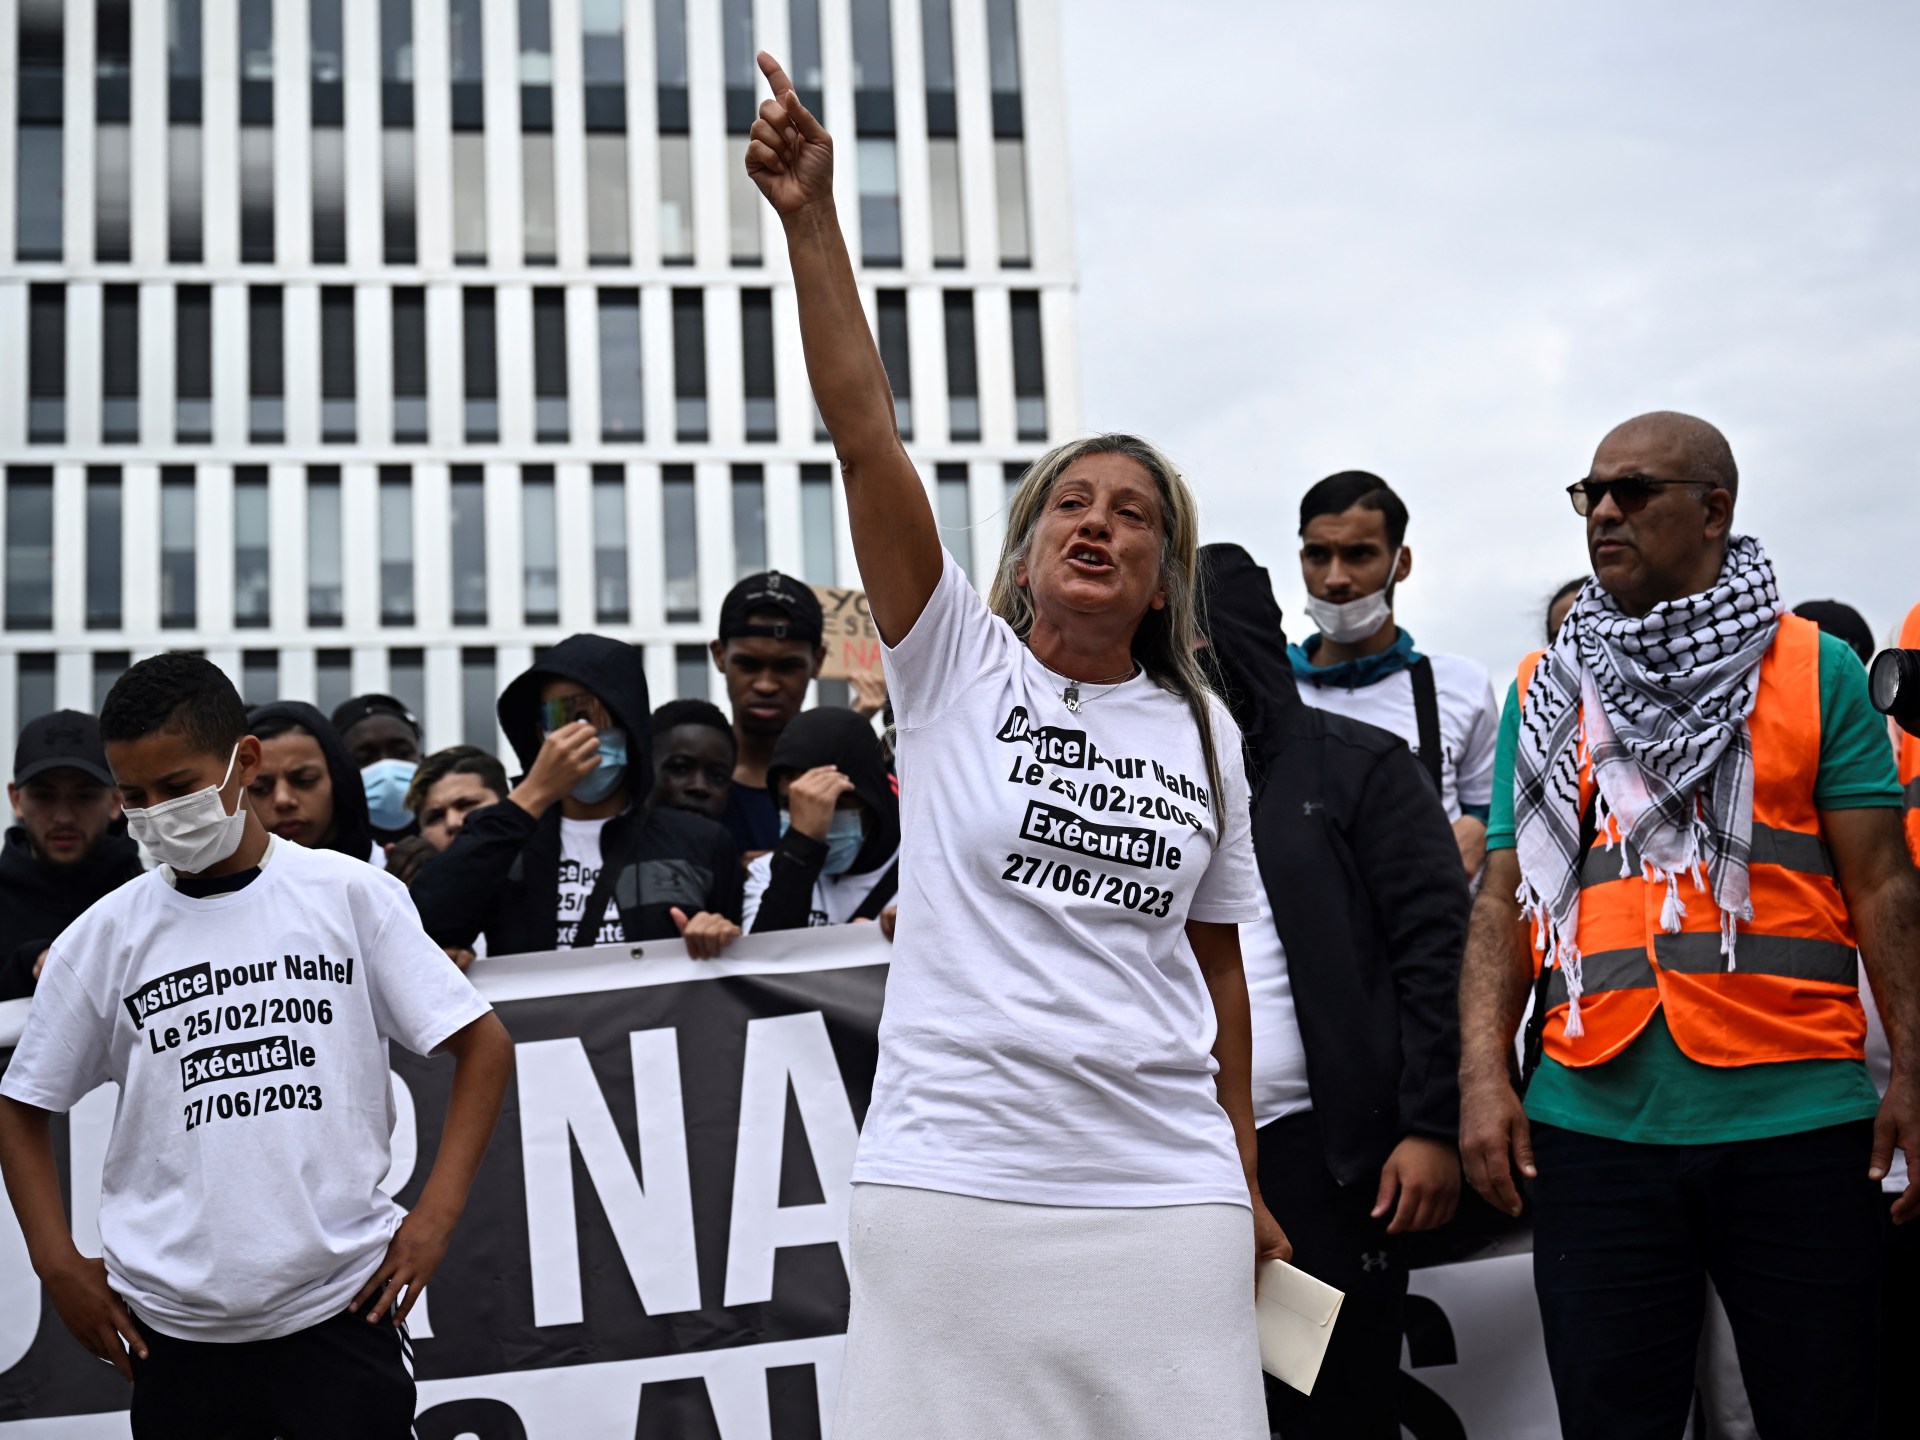 مسيرة من أجل ناهل مرزوق بعد عام على مقتله على يد الشرطة الفرنسية | أخبار الاحتجاجات